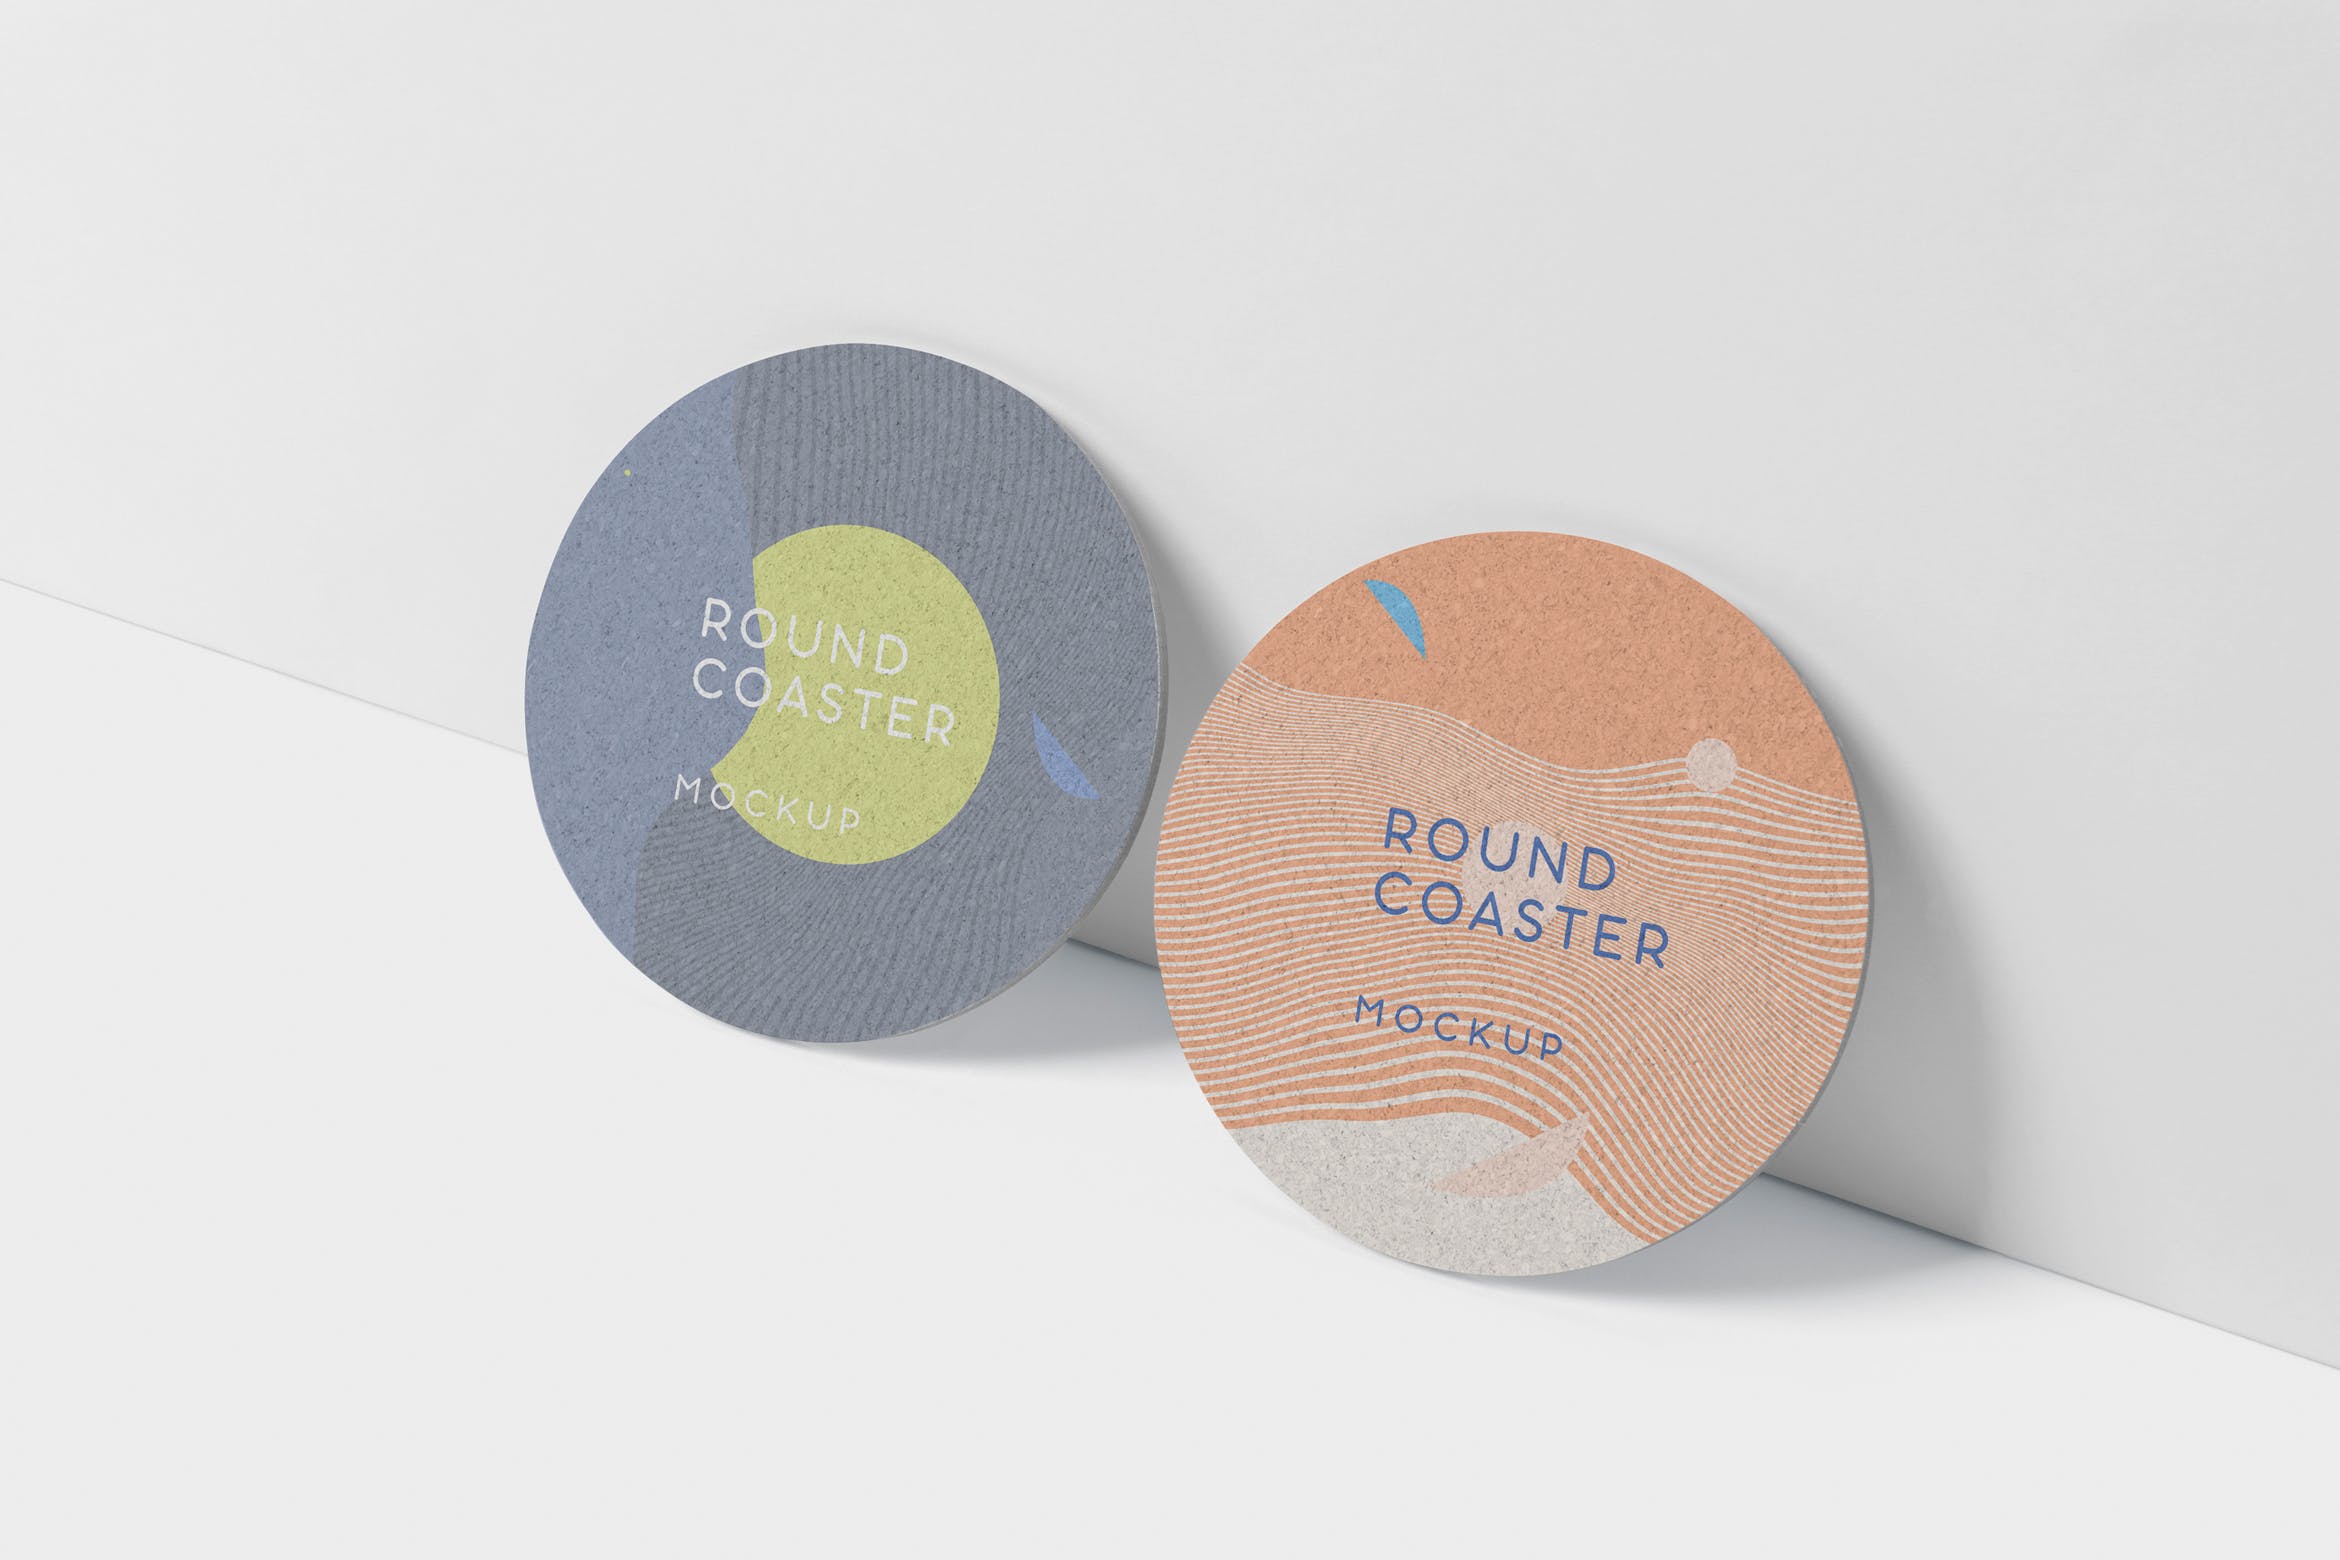 圆形杯垫图案设计效果图素材中国精选 Round Coaster Mock-Up – Medium Size插图